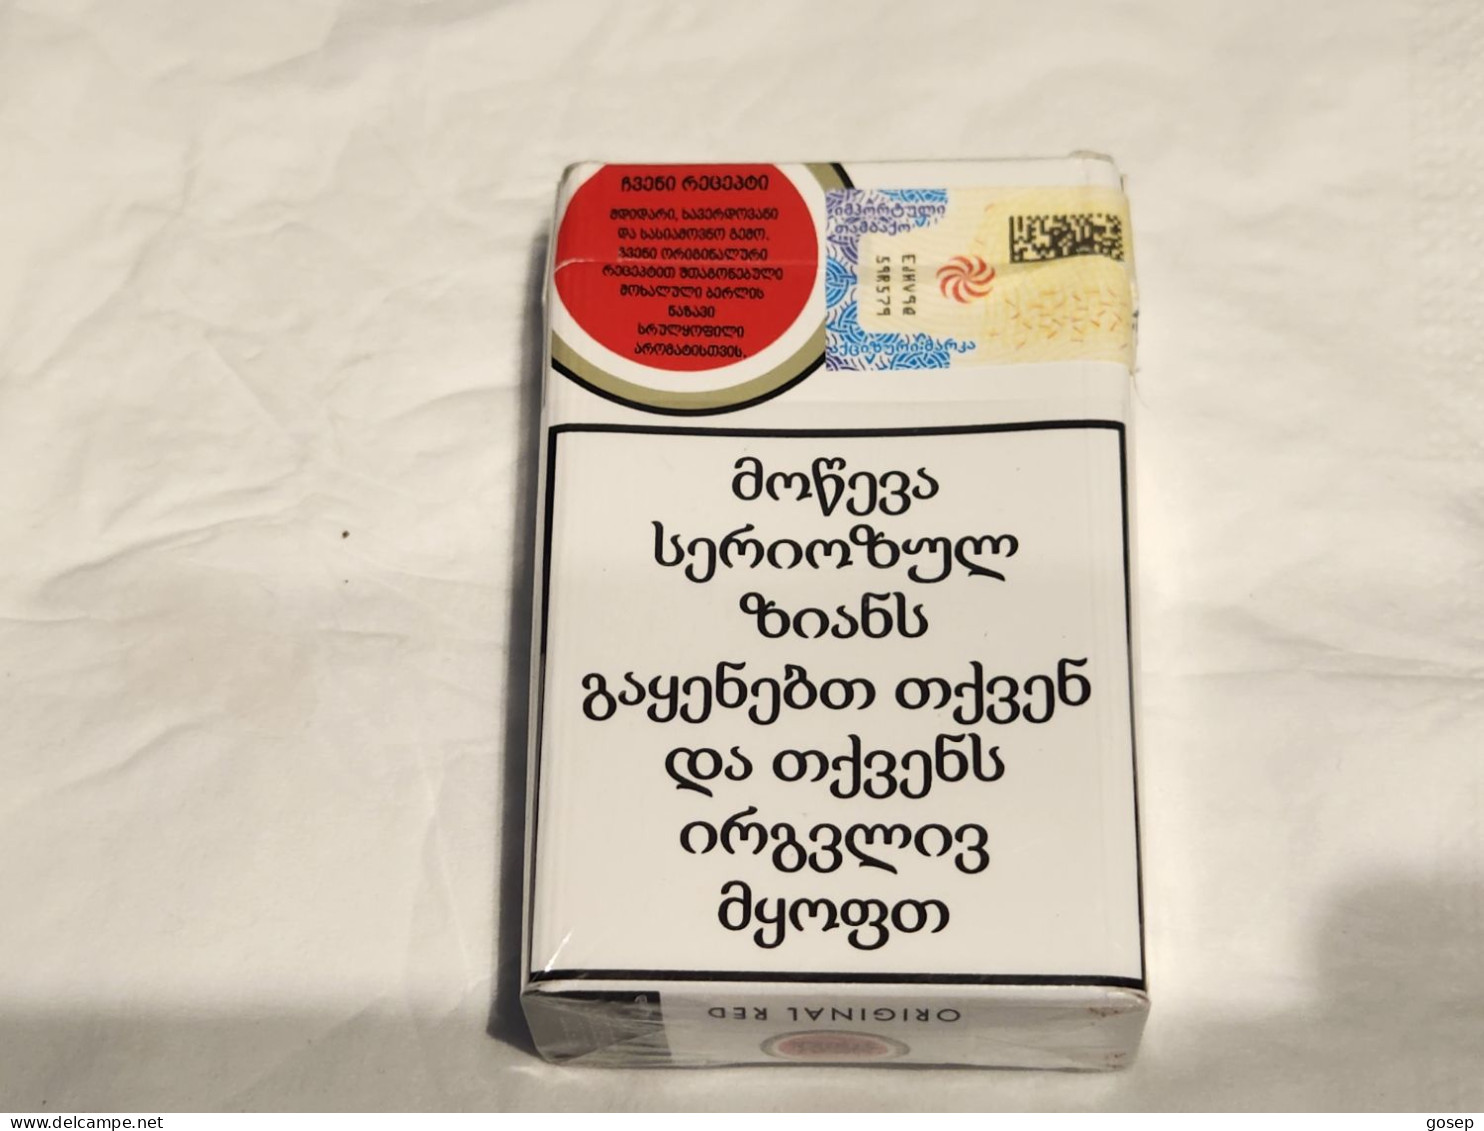 GEORGIA-Boxes--box Empty Cigarette-LUCKY STRIKE-(40)-good Box - Empty Cigarettes Boxes